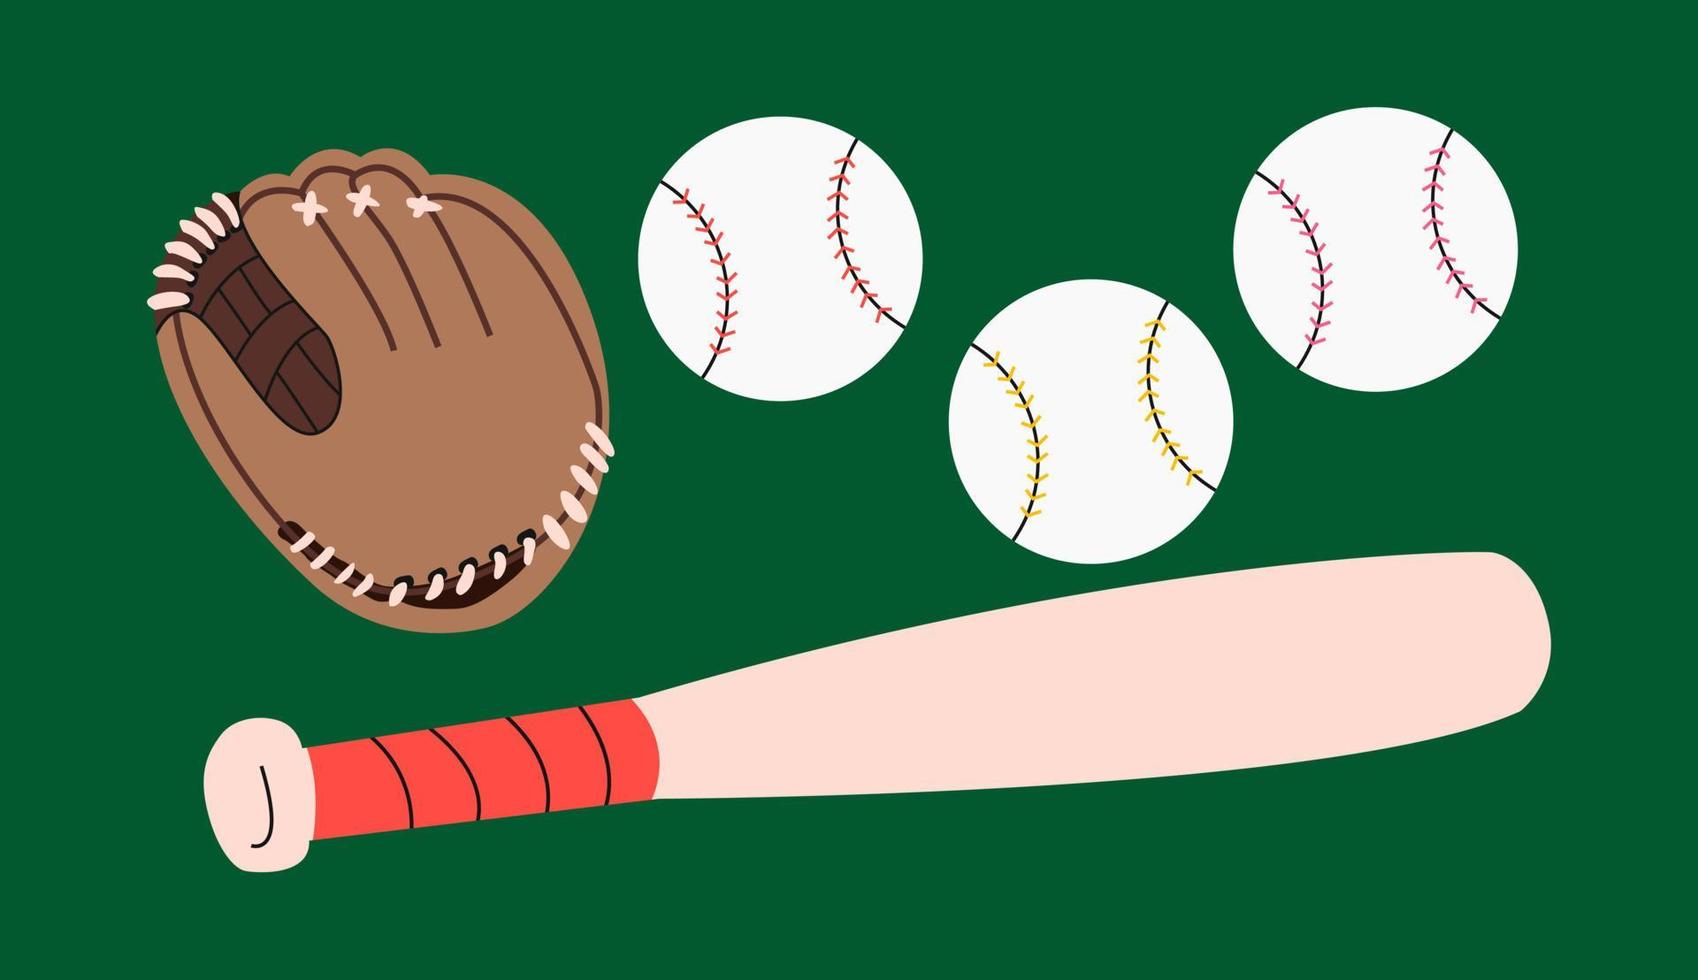 equipo de béisbol con guante de guante marrón de dibujos animados, pelotas  y bate, ilustración sobre